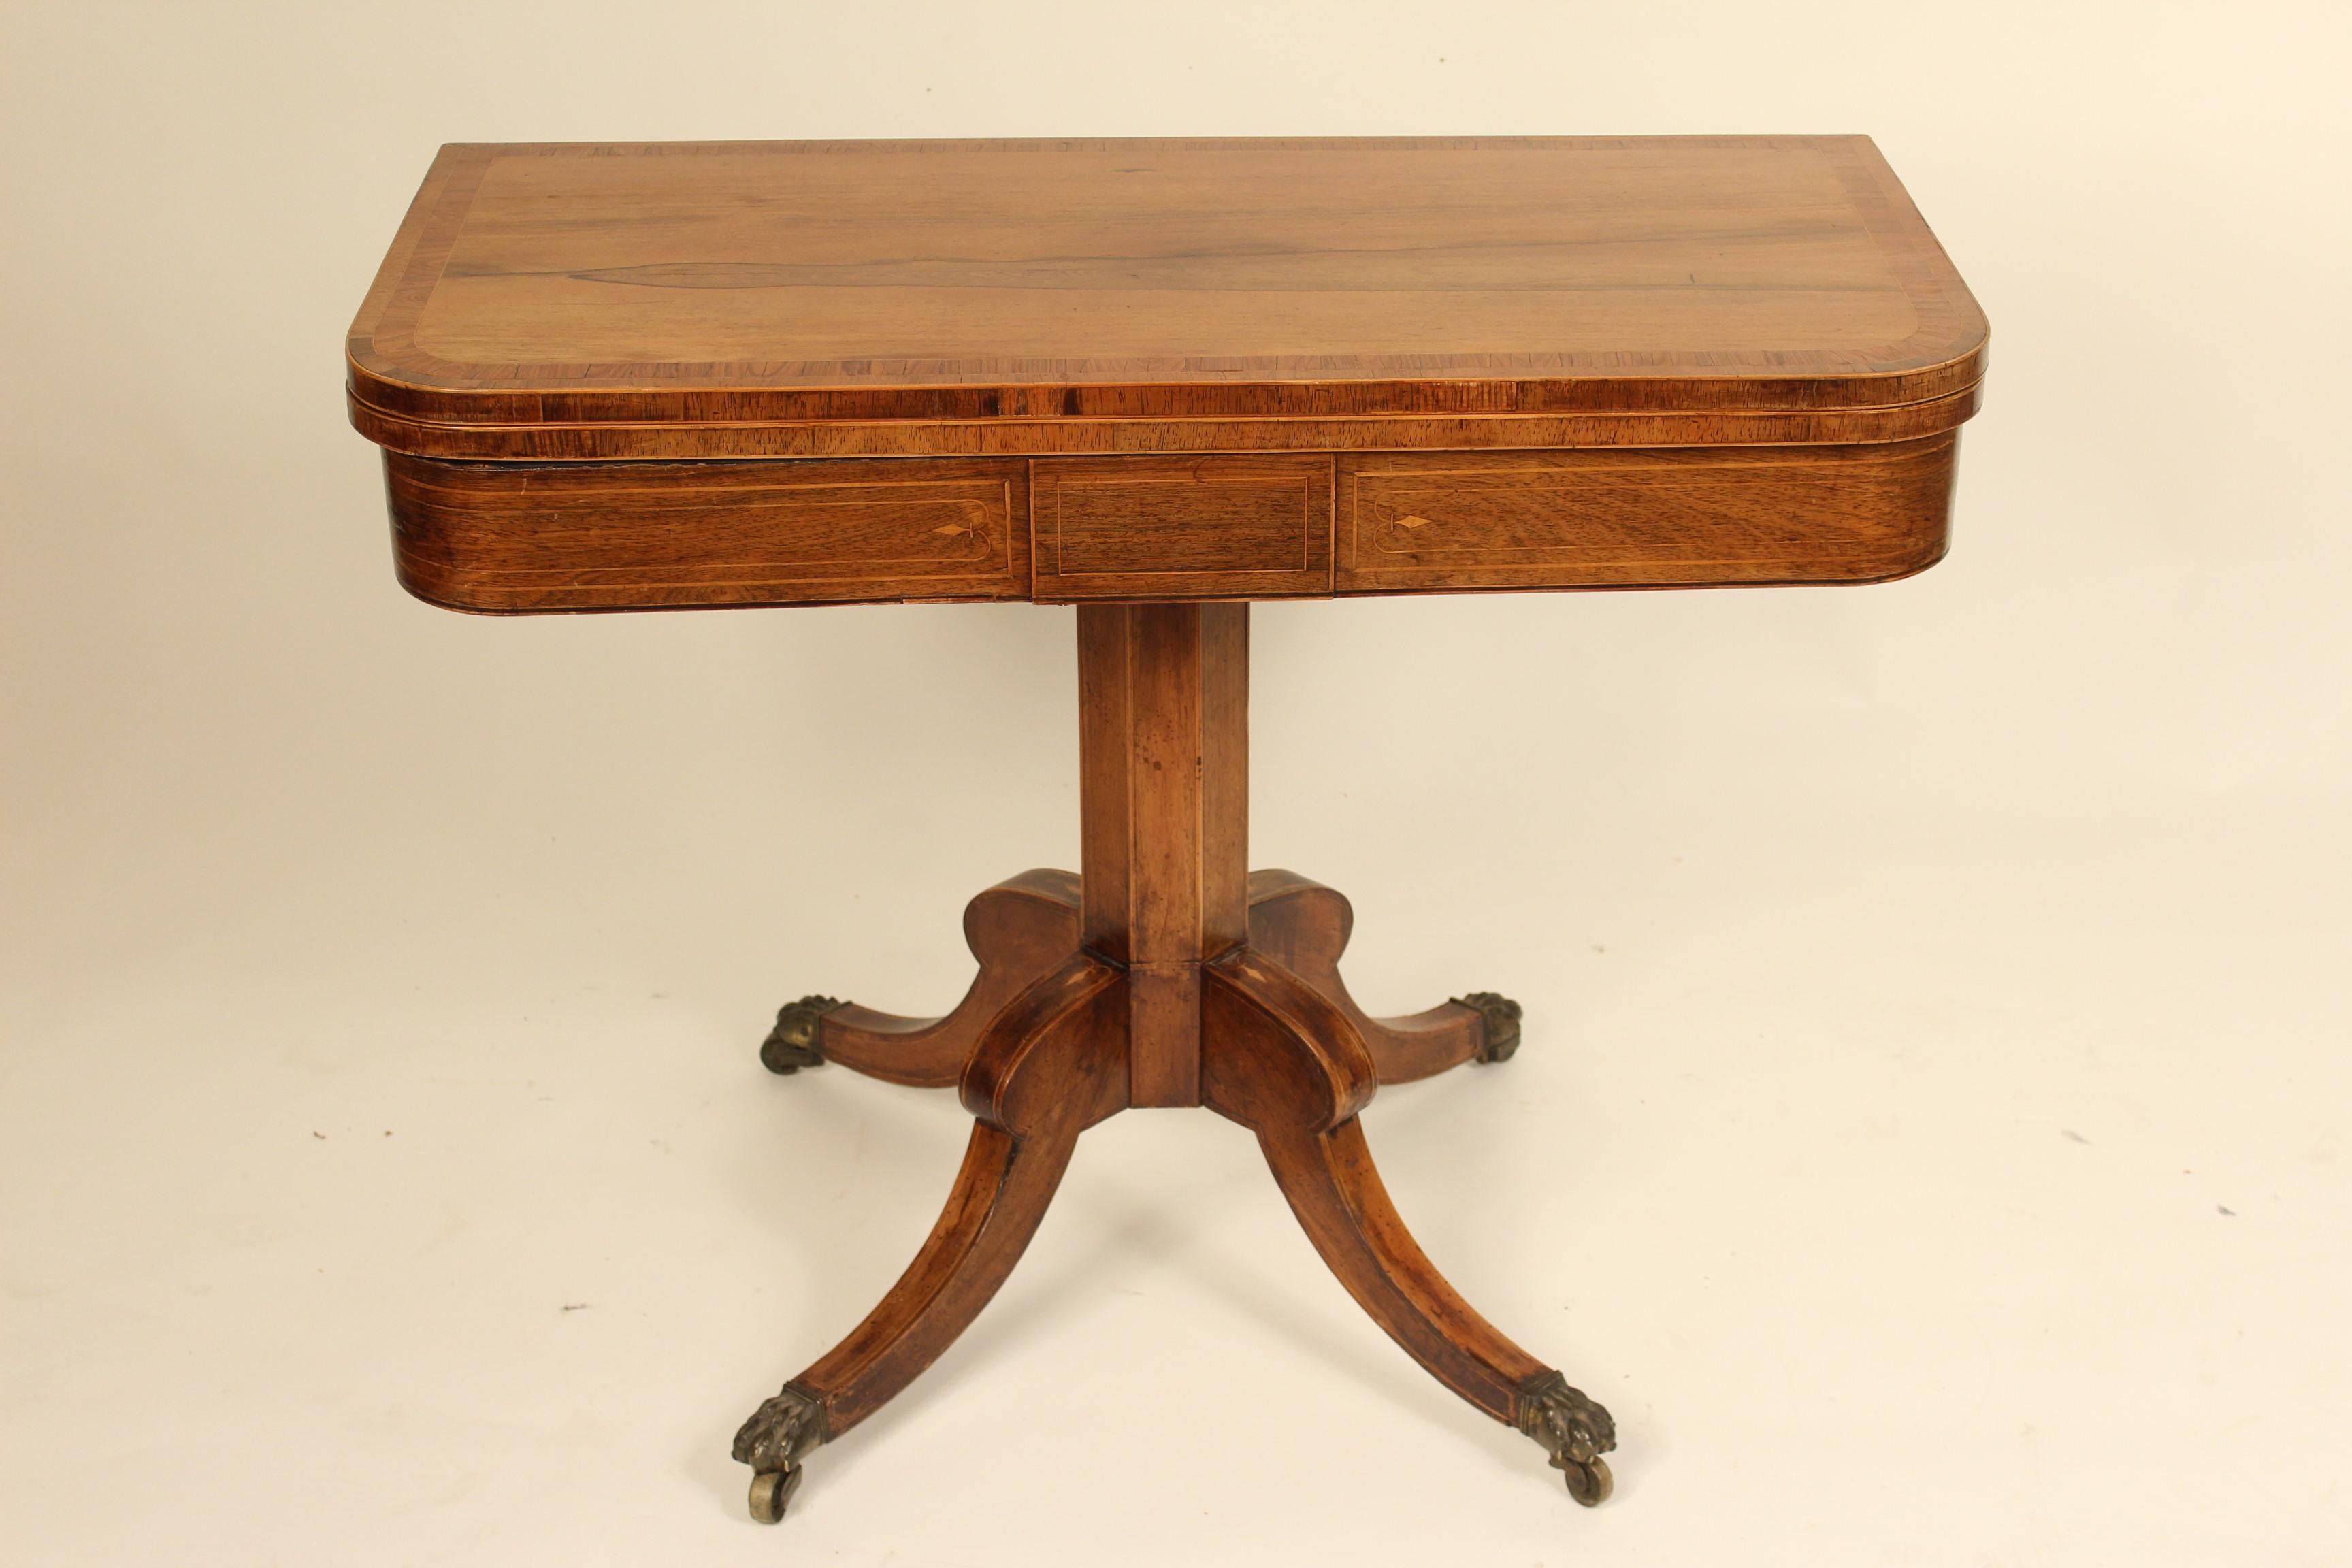 Englischer Regency D-förmiger Spieltisch aus Palisander, frühes 19. Jahrhundert. Die Tiefe der Platte beträgt 17,5